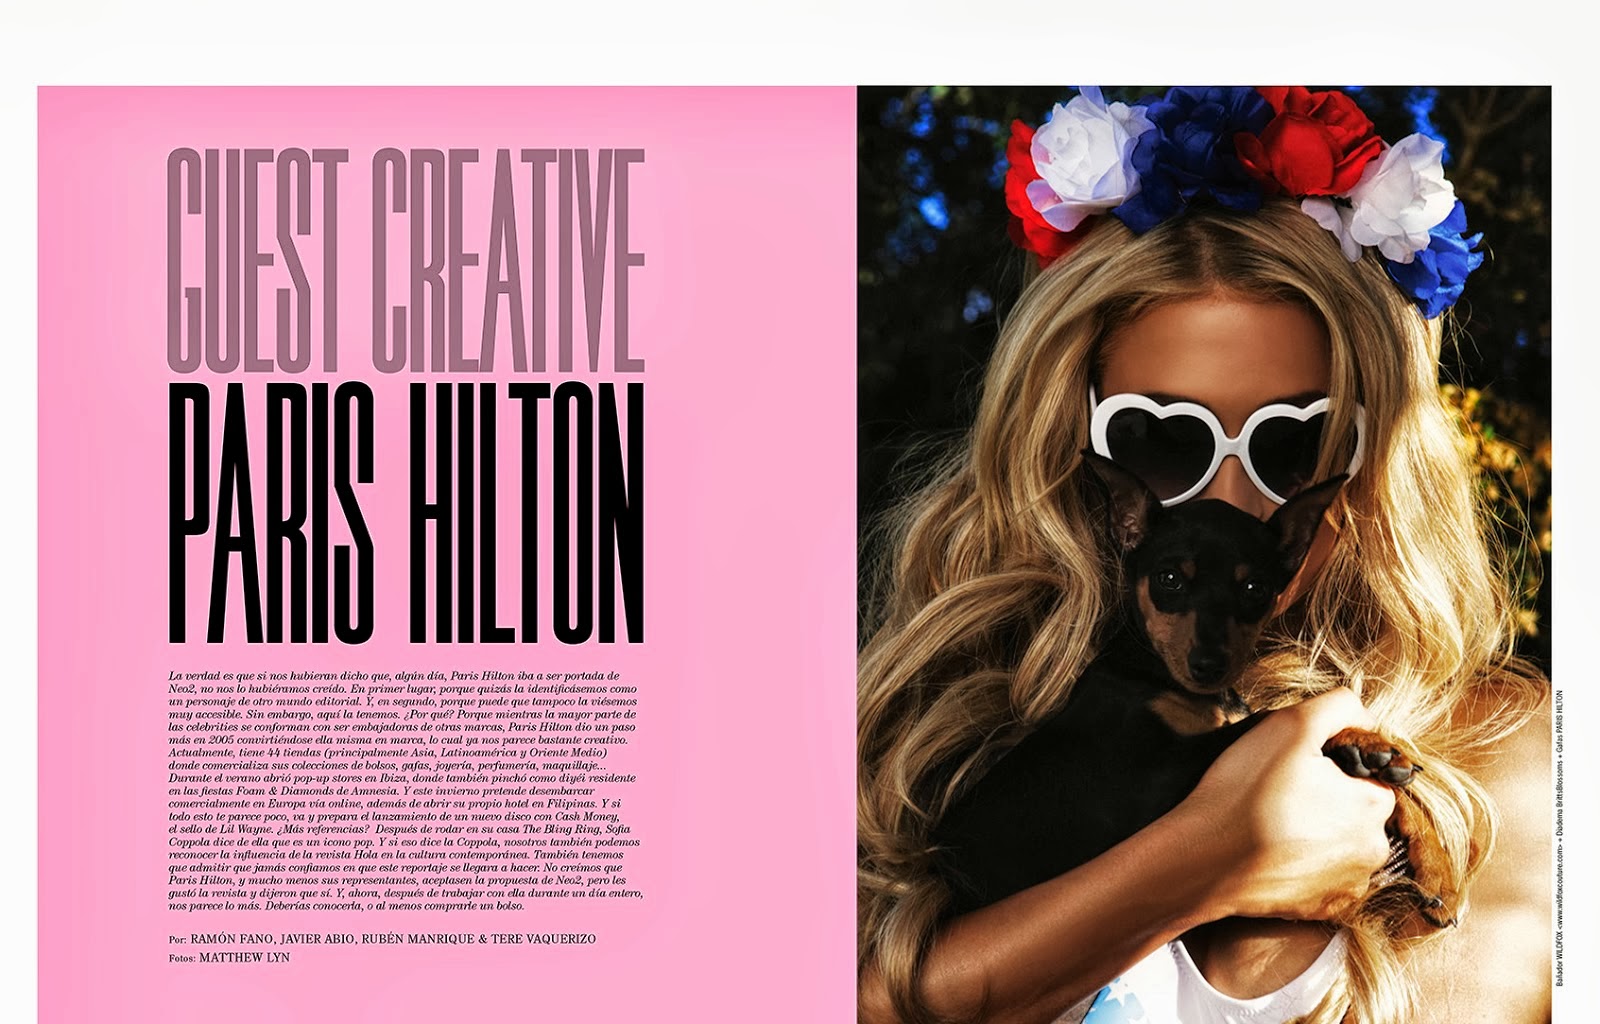 صور باريس هيلتون على غلاف مجلة Neo2 اكتوبر 2013